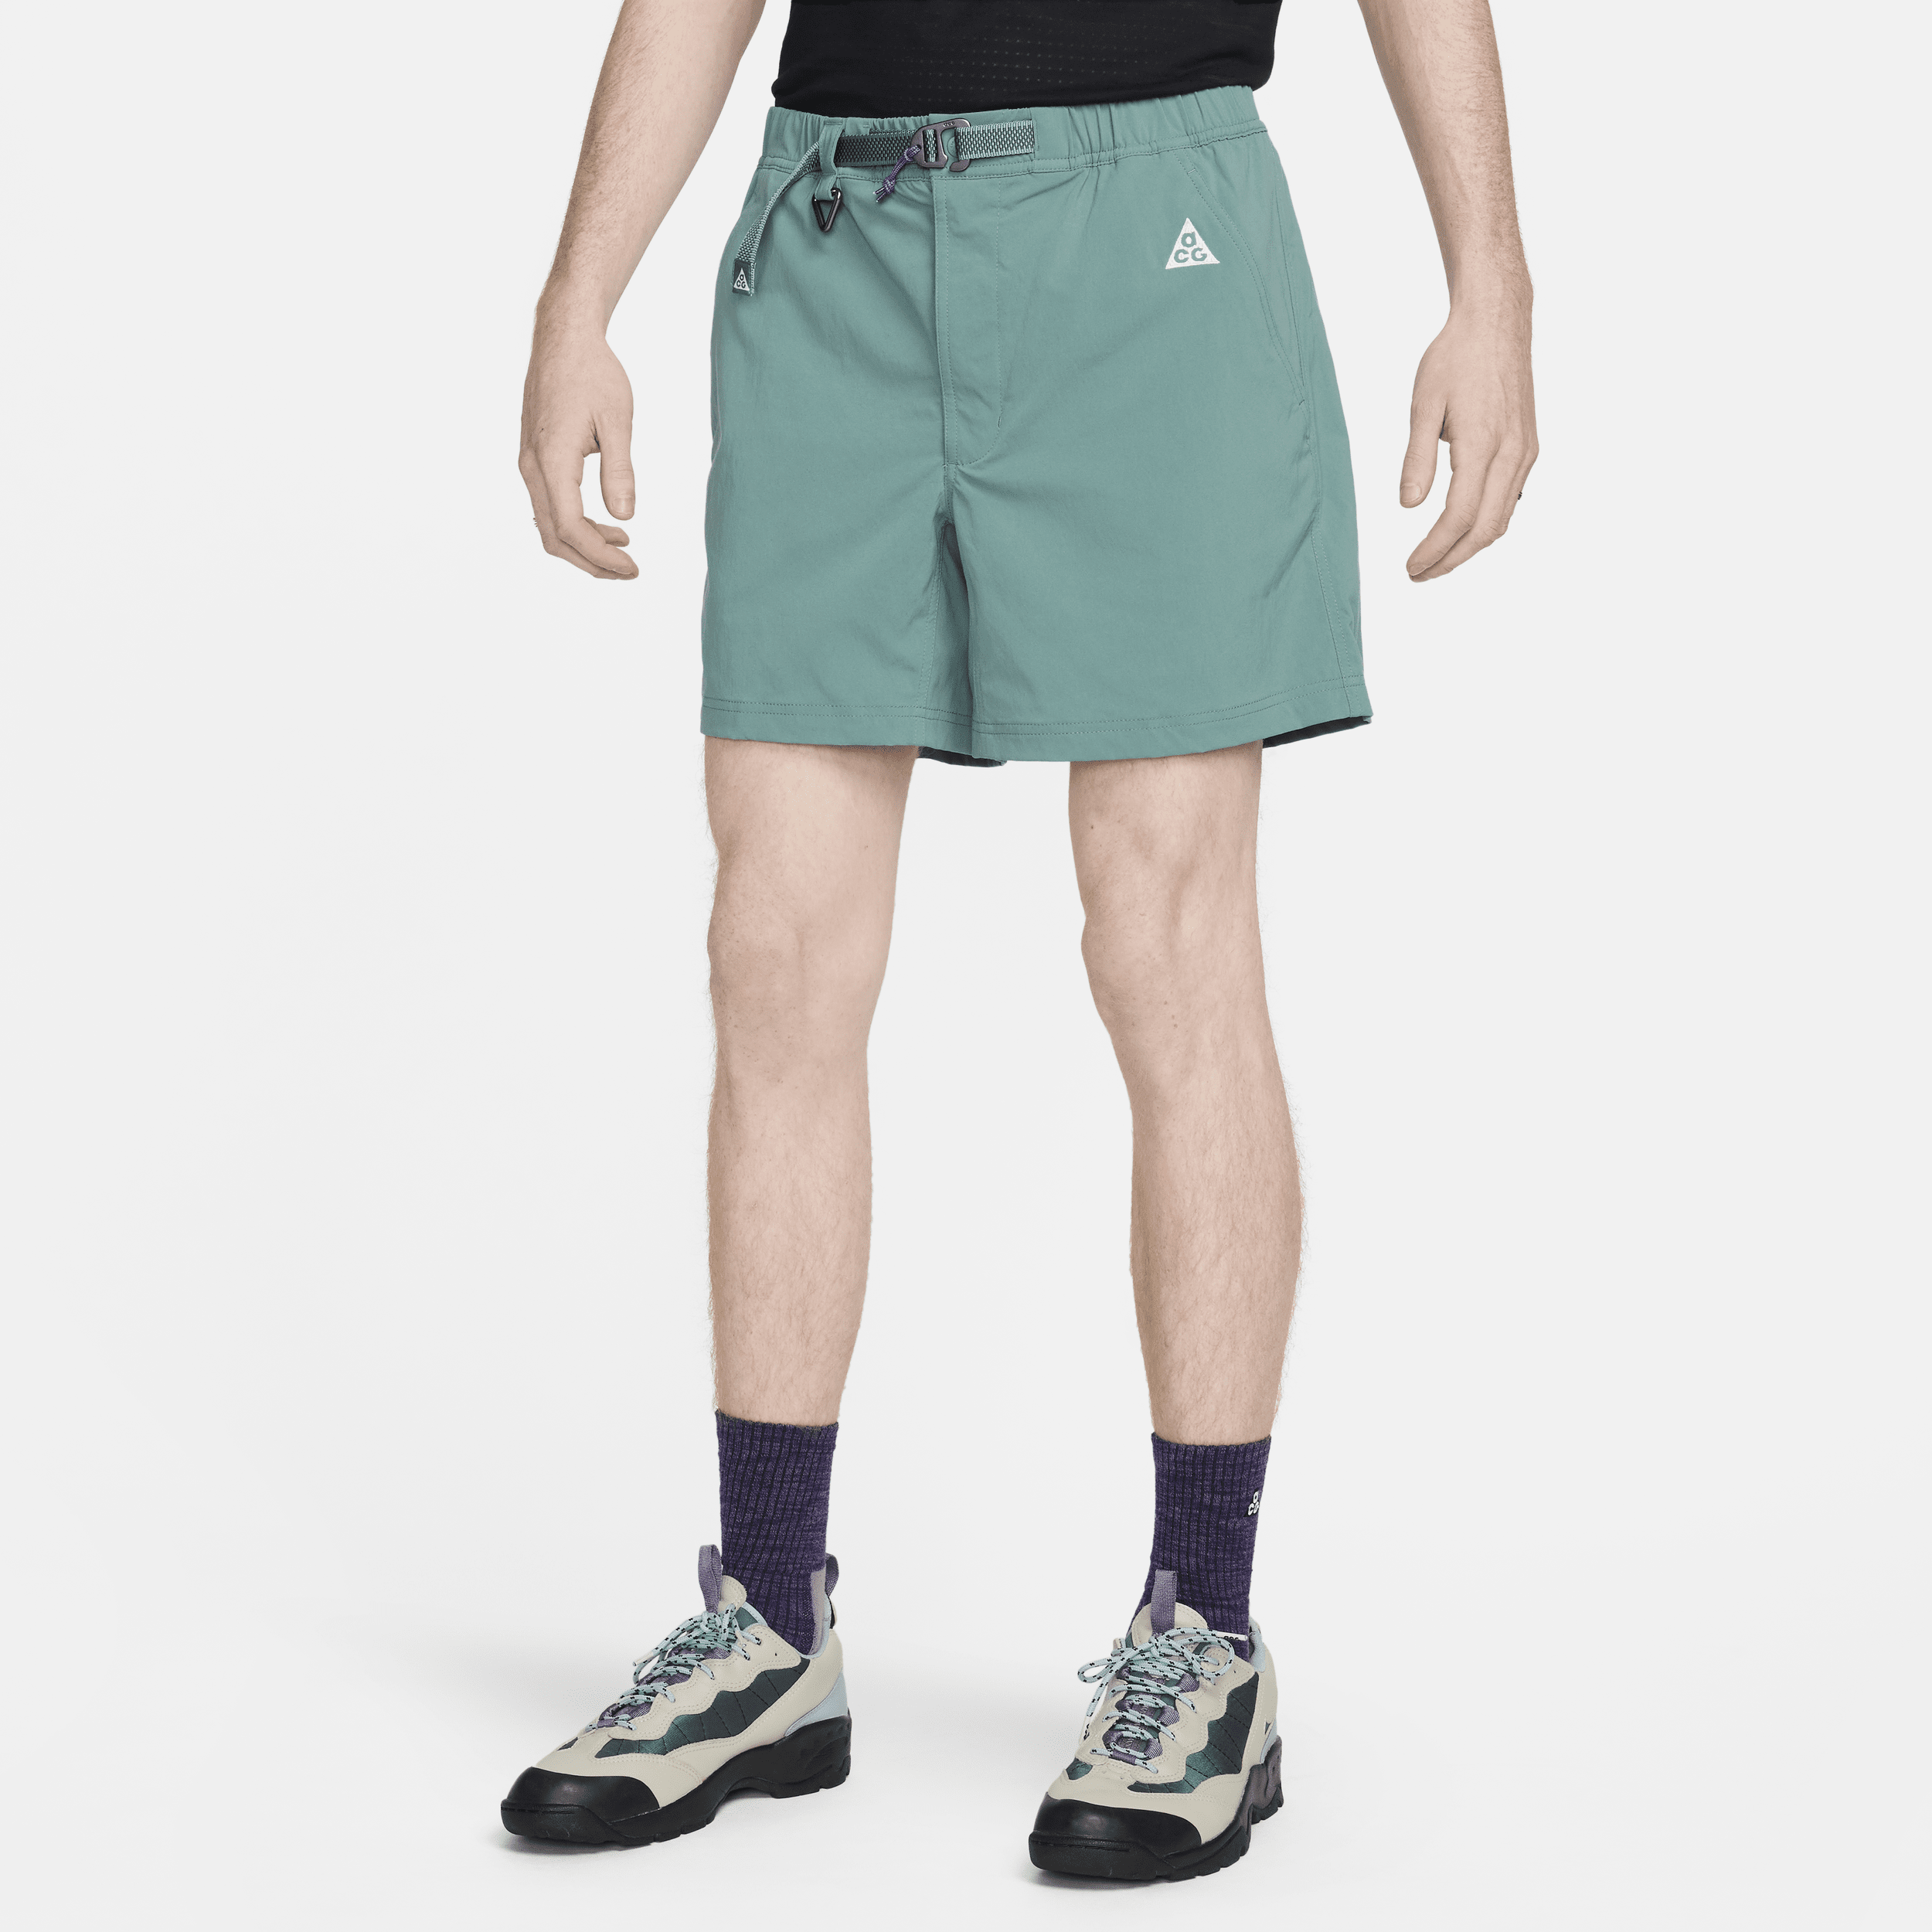 Shorts da trekking Nike ACG – Uomo - Verde